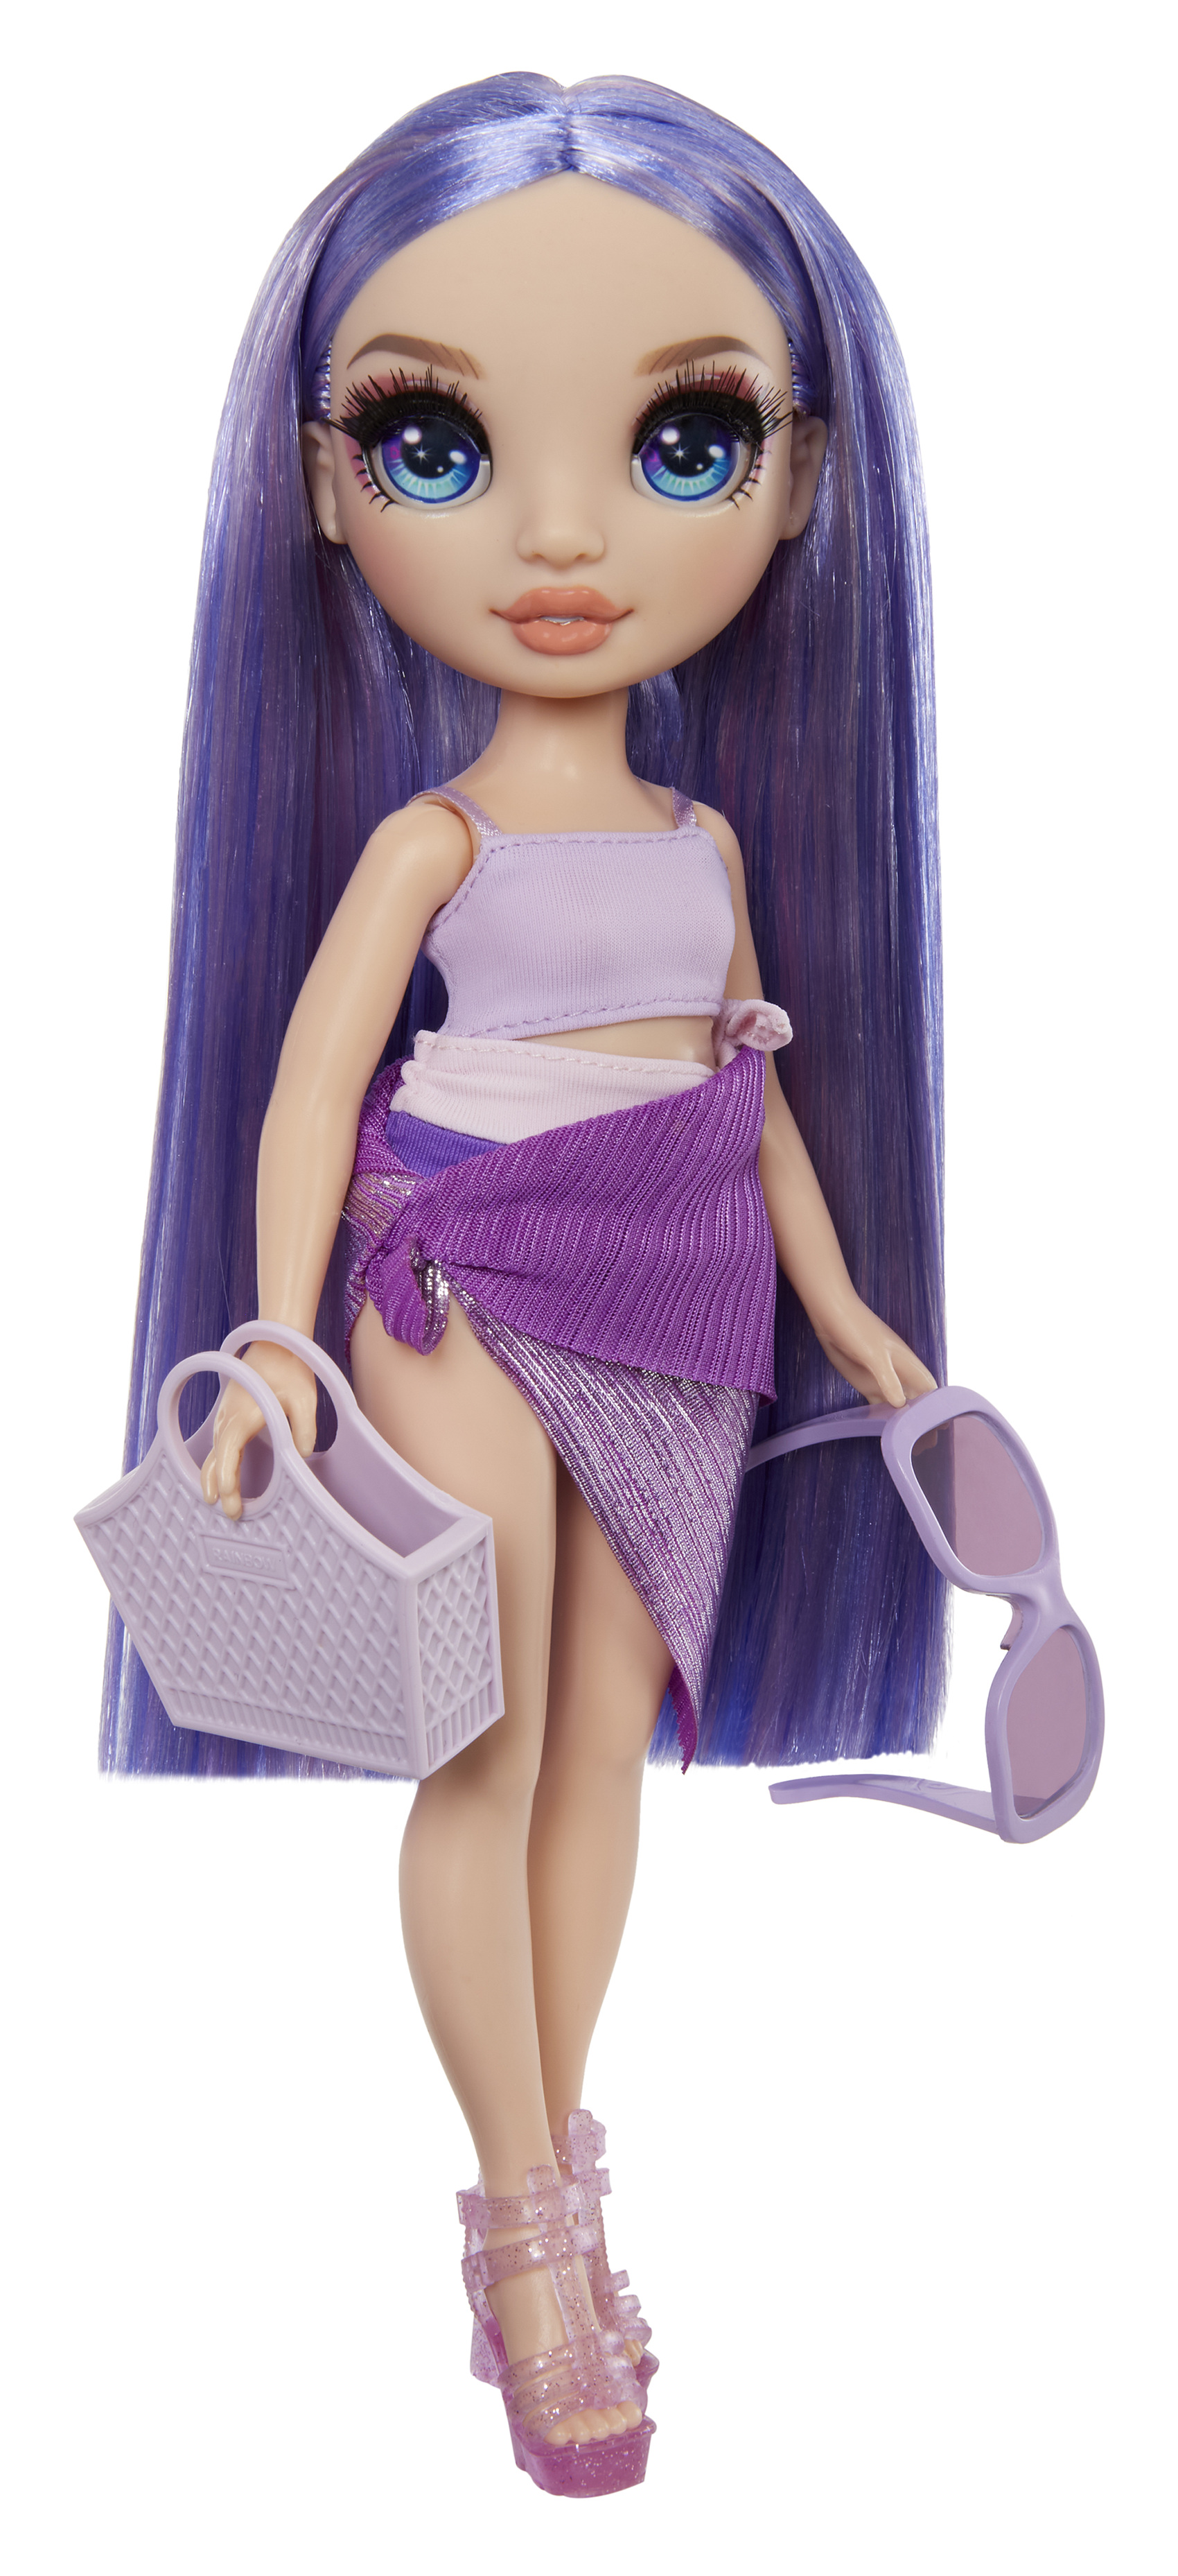 Rainbow high swim & style - violet (viola) - bambola da 28 cm con confezione scintillante e oltre 10 outfit - costume da bagno rimovibile, sandali, accessori divertenti - Rainbow High